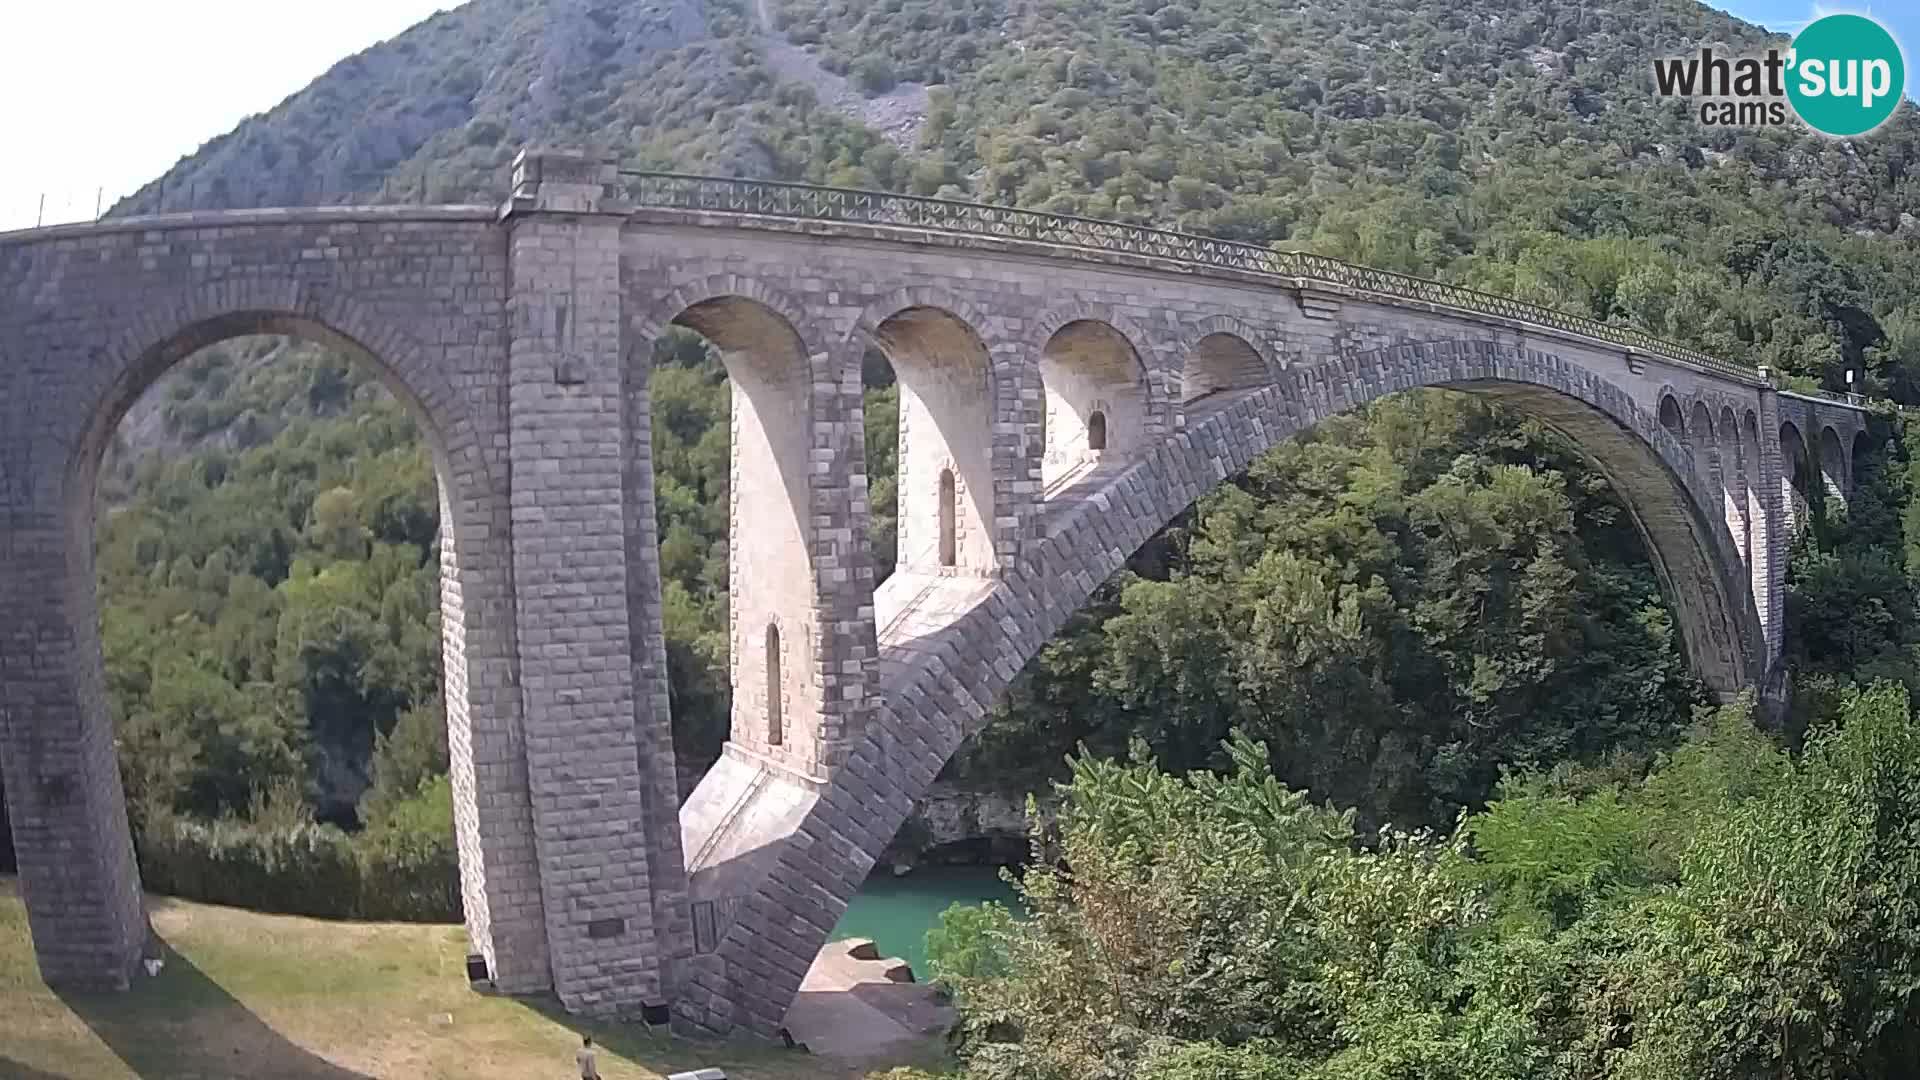 Salcanobrücke – webcam